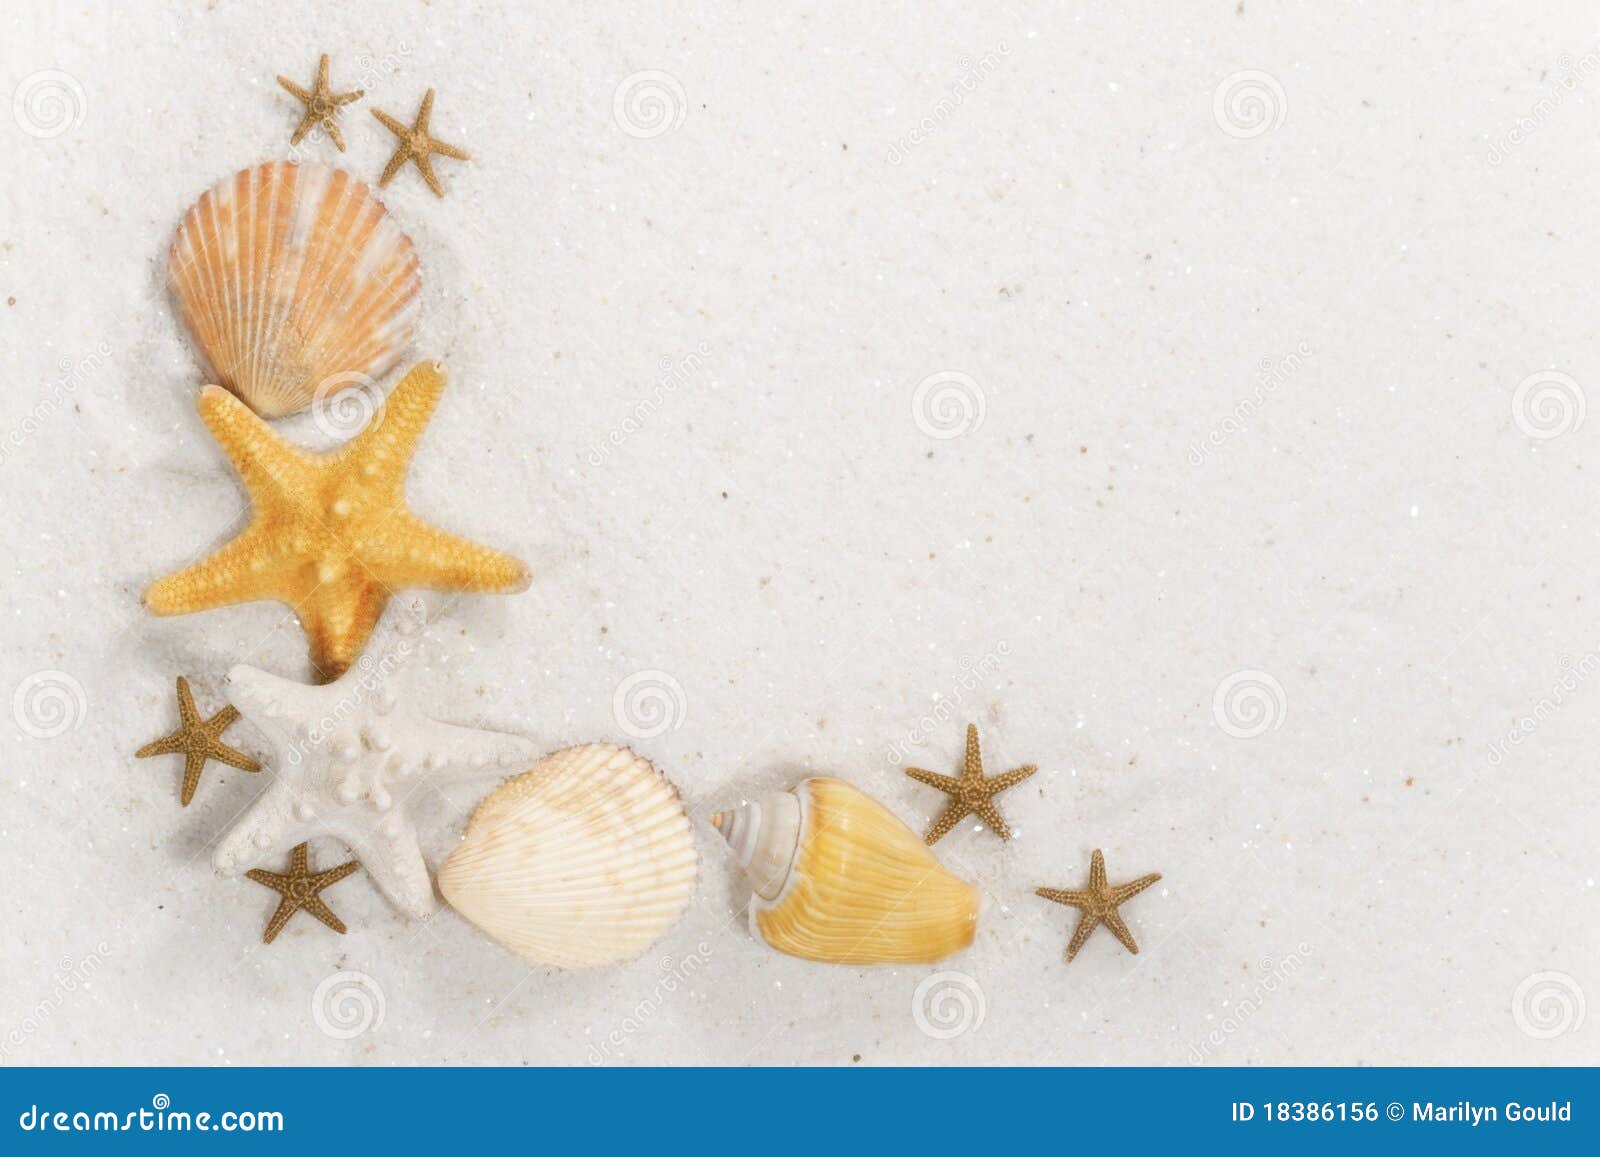 free clipart beach shells - photo #38